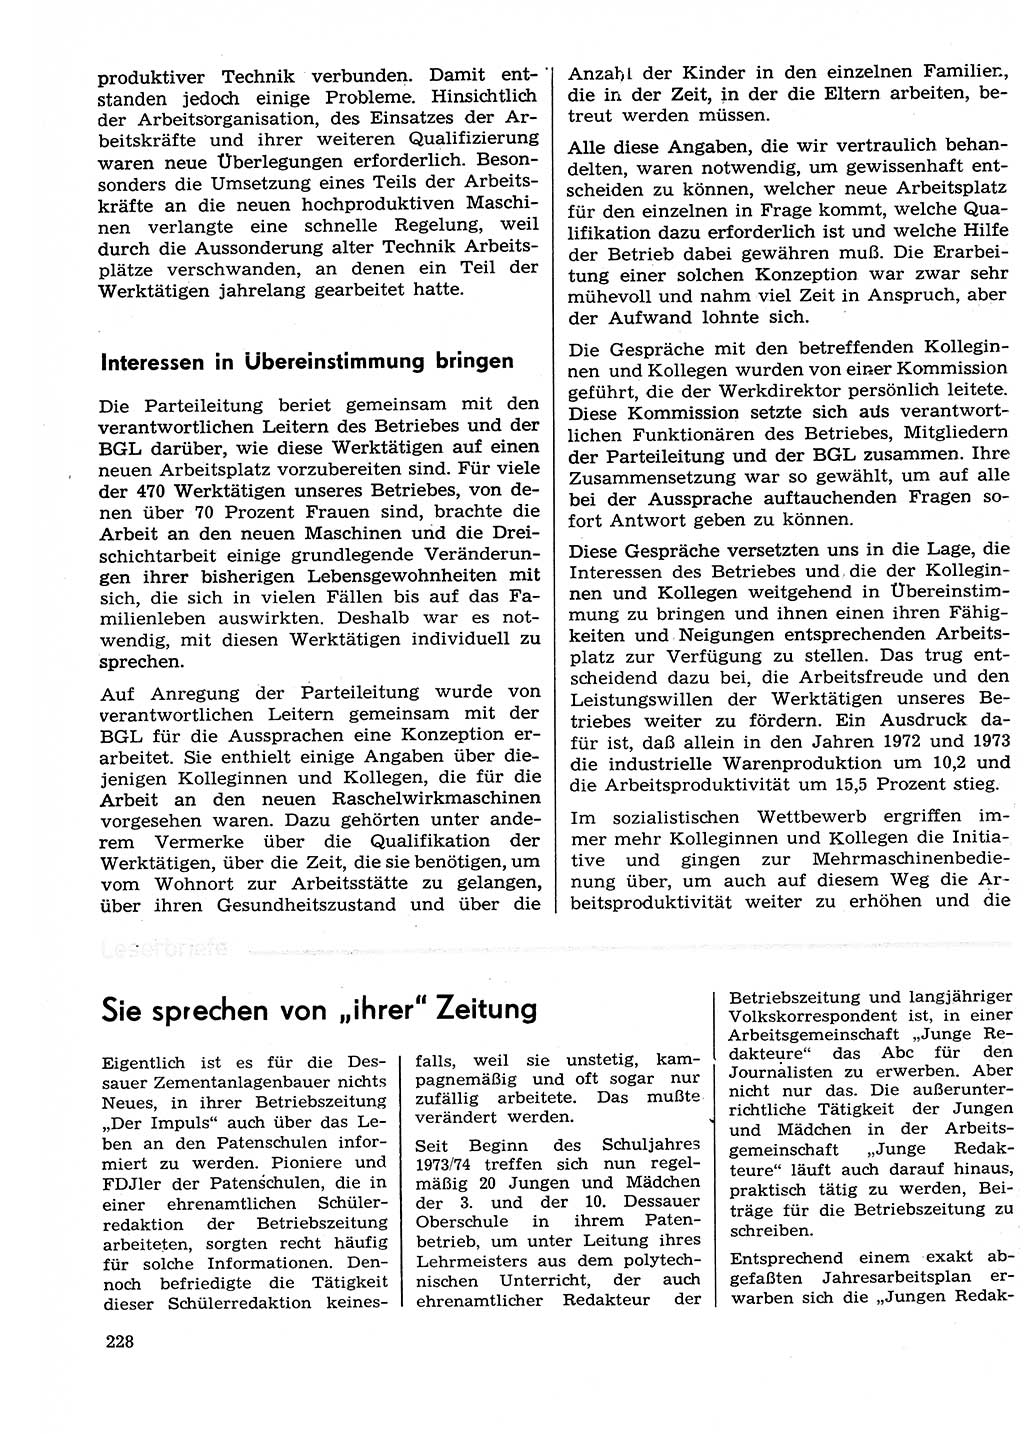 Neuer Weg (NW), Organ des Zentralkomitees (ZK) der SED (Sozialistische Einheitspartei Deutschlands) für Fragen des Parteilebens, 29. Jahrgang [Deutsche Demokratische Republik (DDR)] 1974, Seite 228 (NW ZK SED DDR 1974, S. 228)